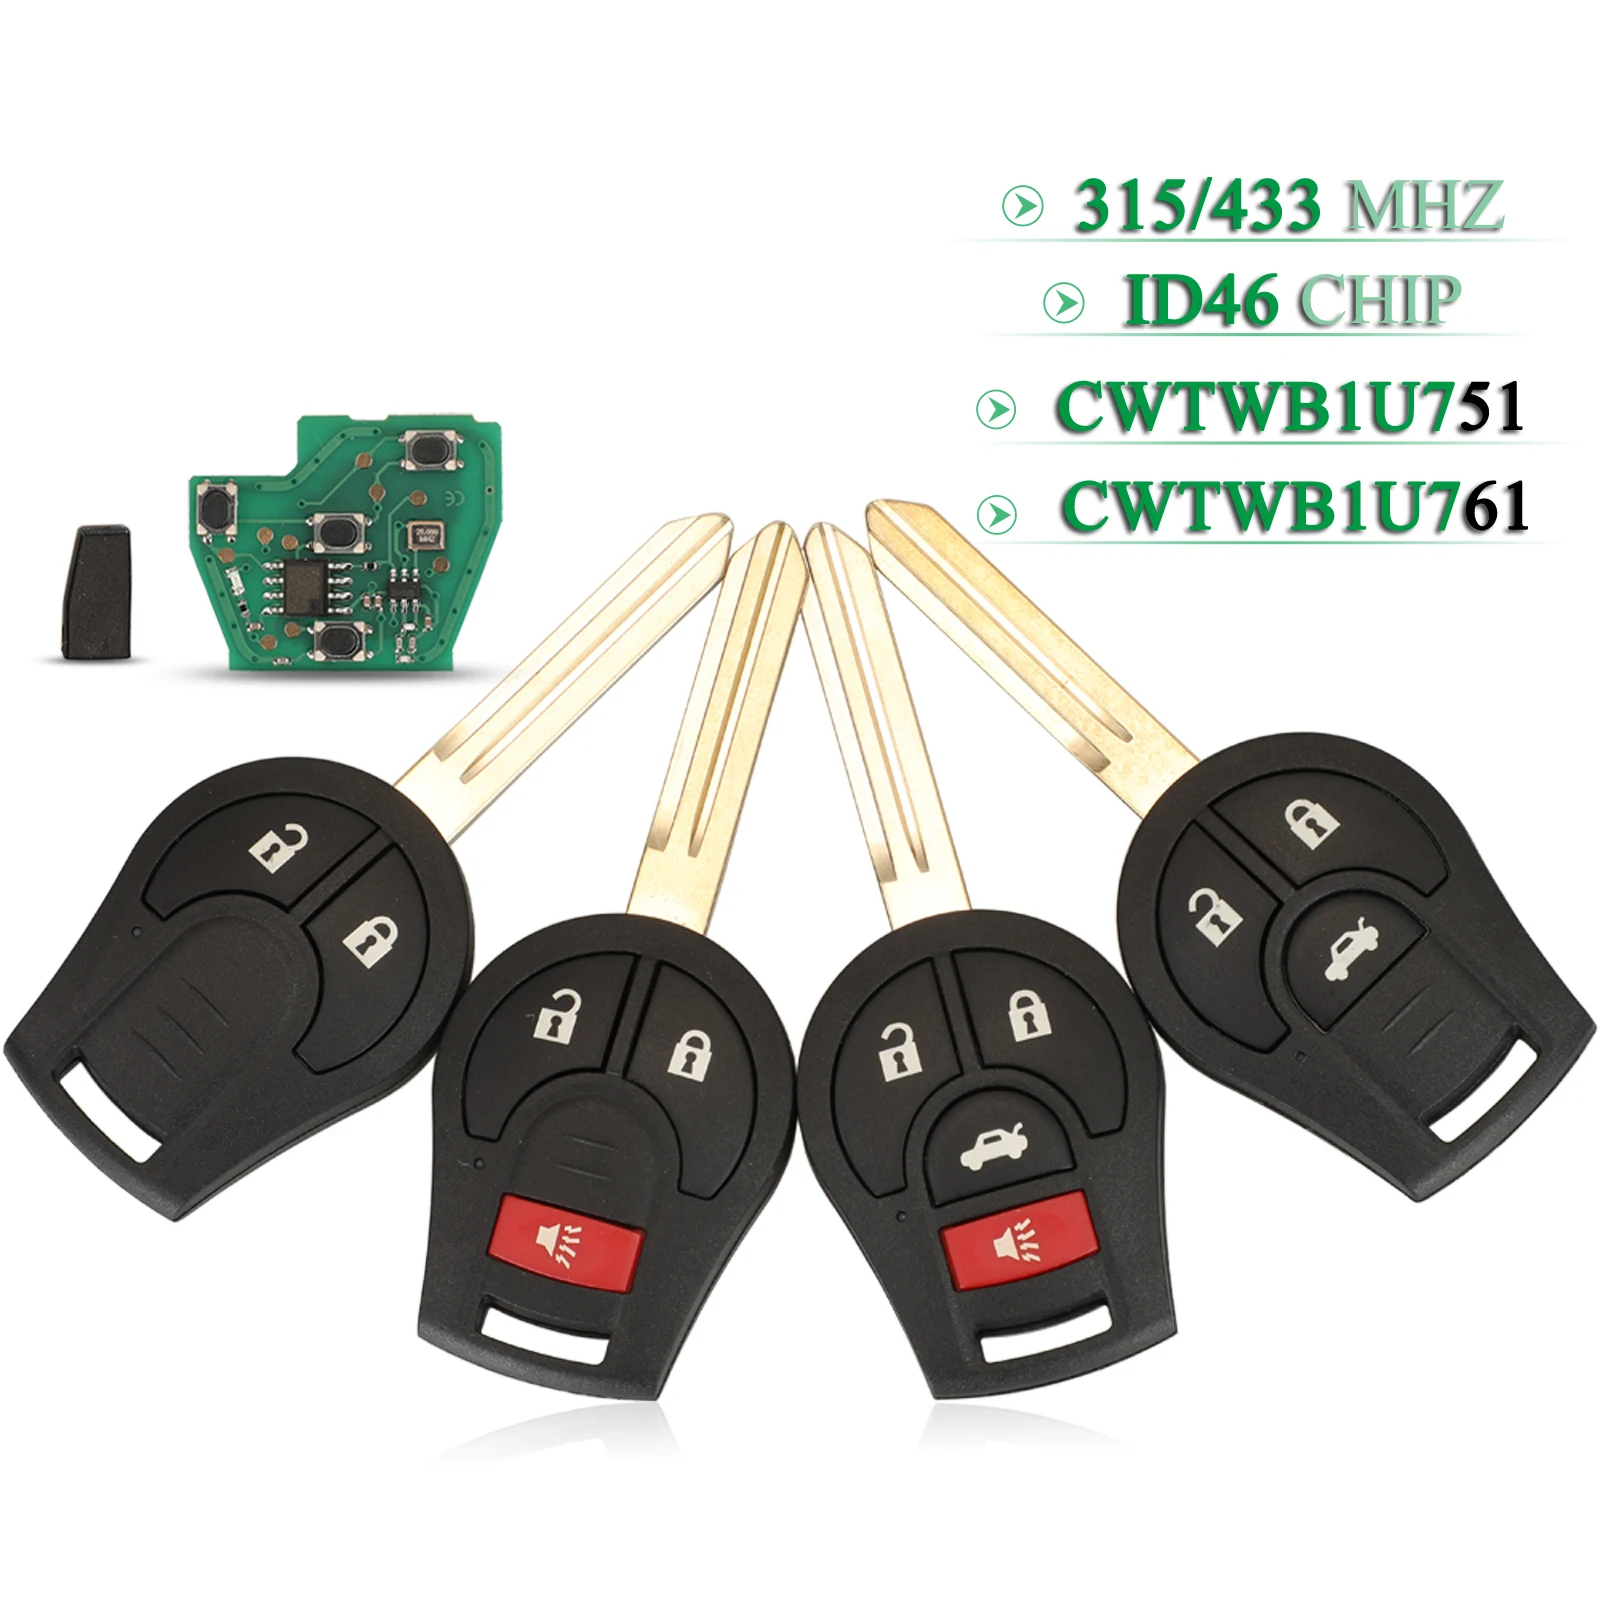 Jingyuqin-llave de coche remota para Nissan Rouge, llave con 2/3/4 botones, Chip ID46, 315/433Mhz, CWTWB1U751 / CWTWB1U761 Fob